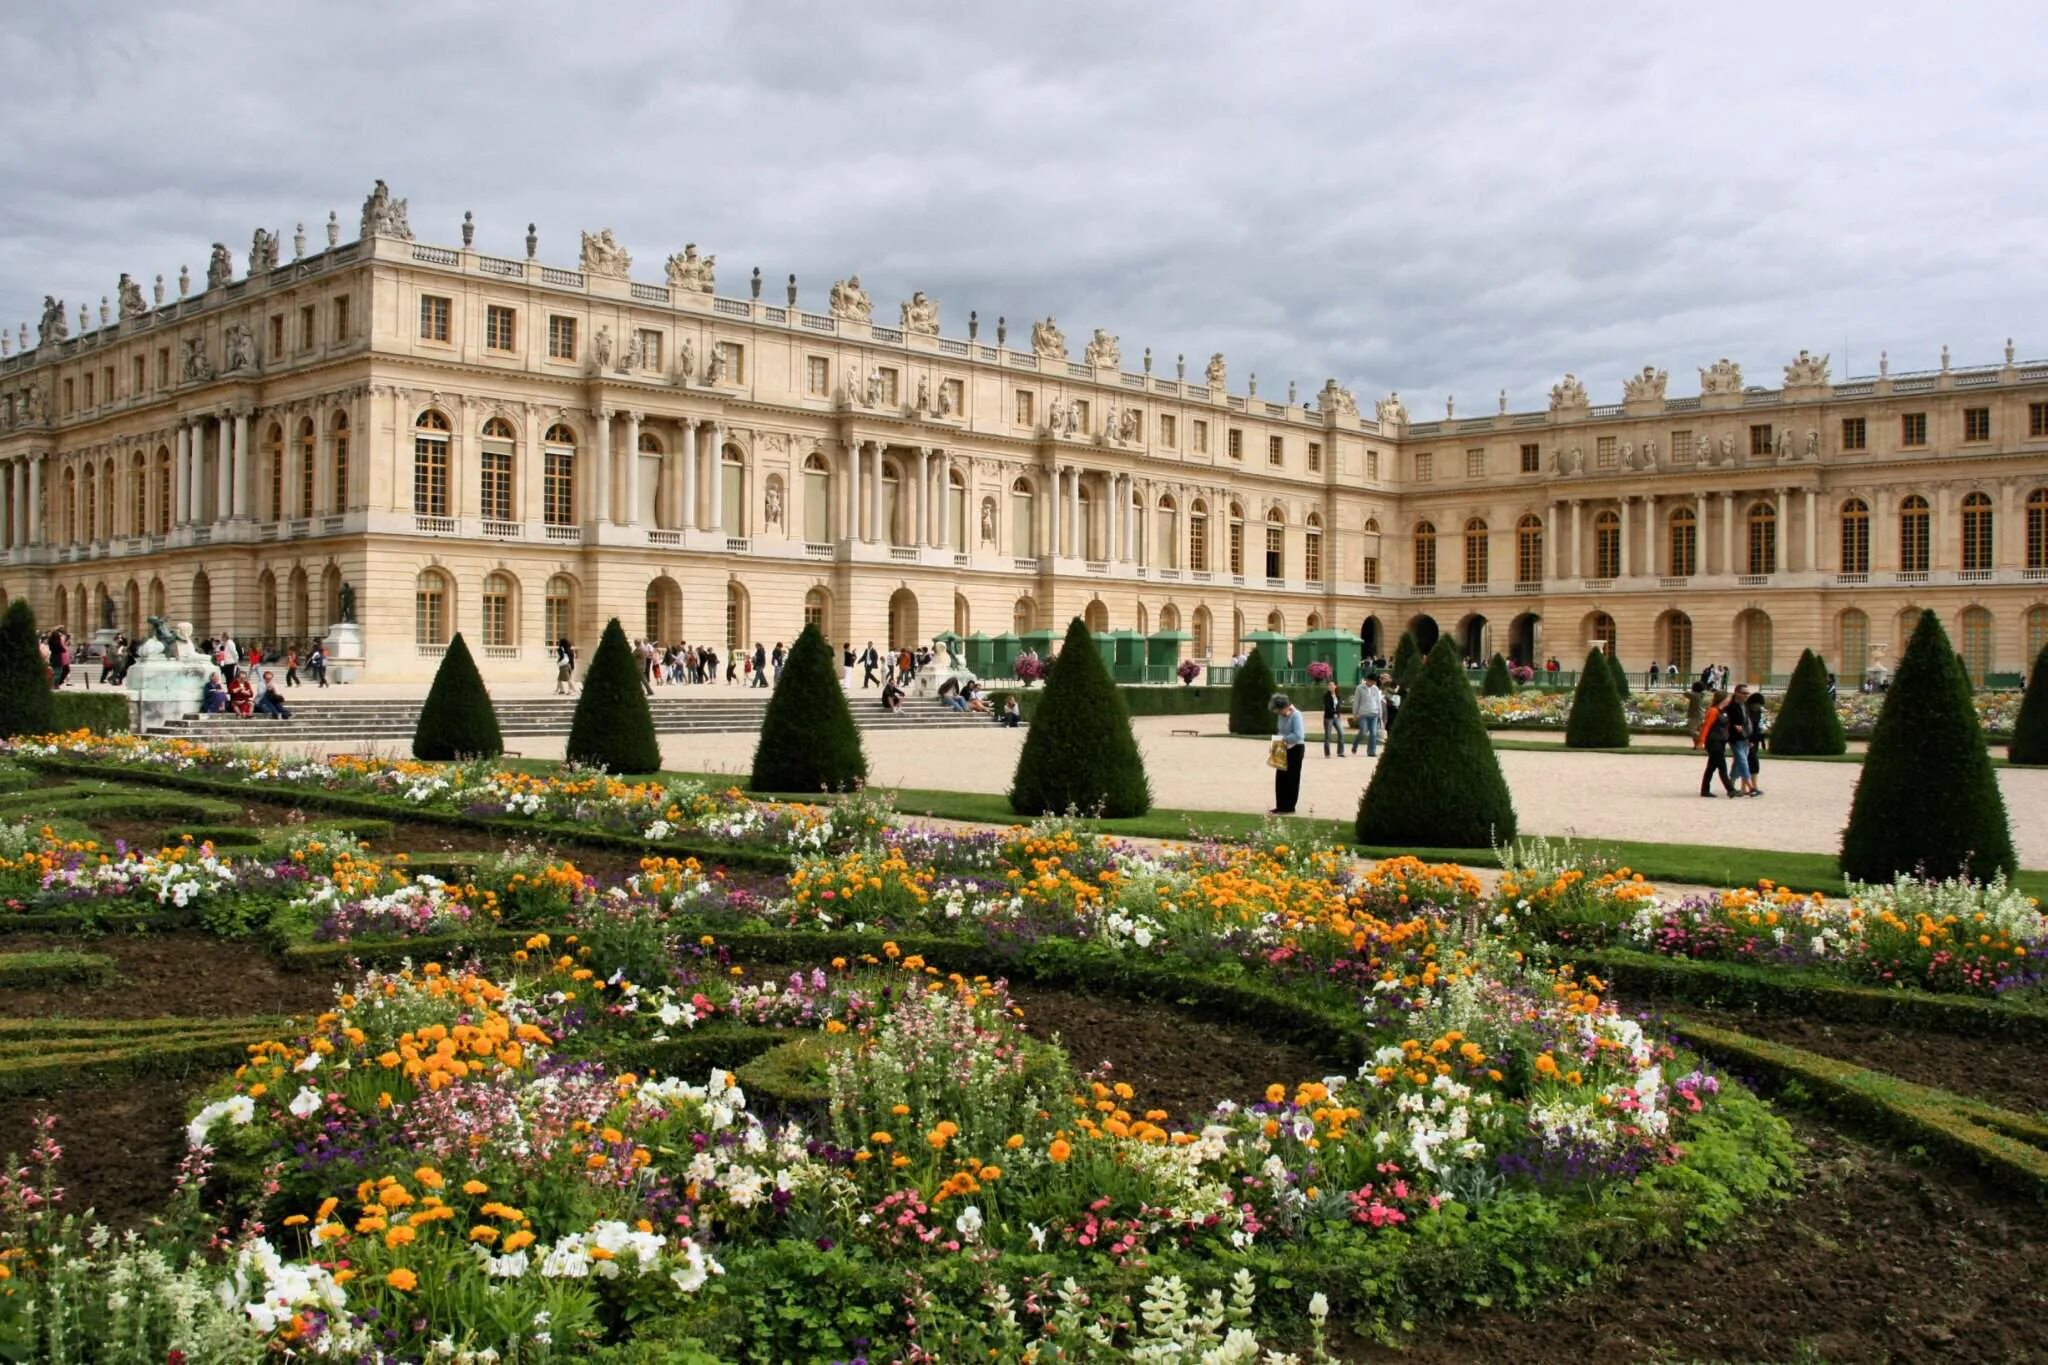 Французский версаль. Версальский дворец Версаль Франция. Версаль дворцово-парковый ансамбль во Франции. Королевский дворец в Версале. Королевская резиденция Версаль.